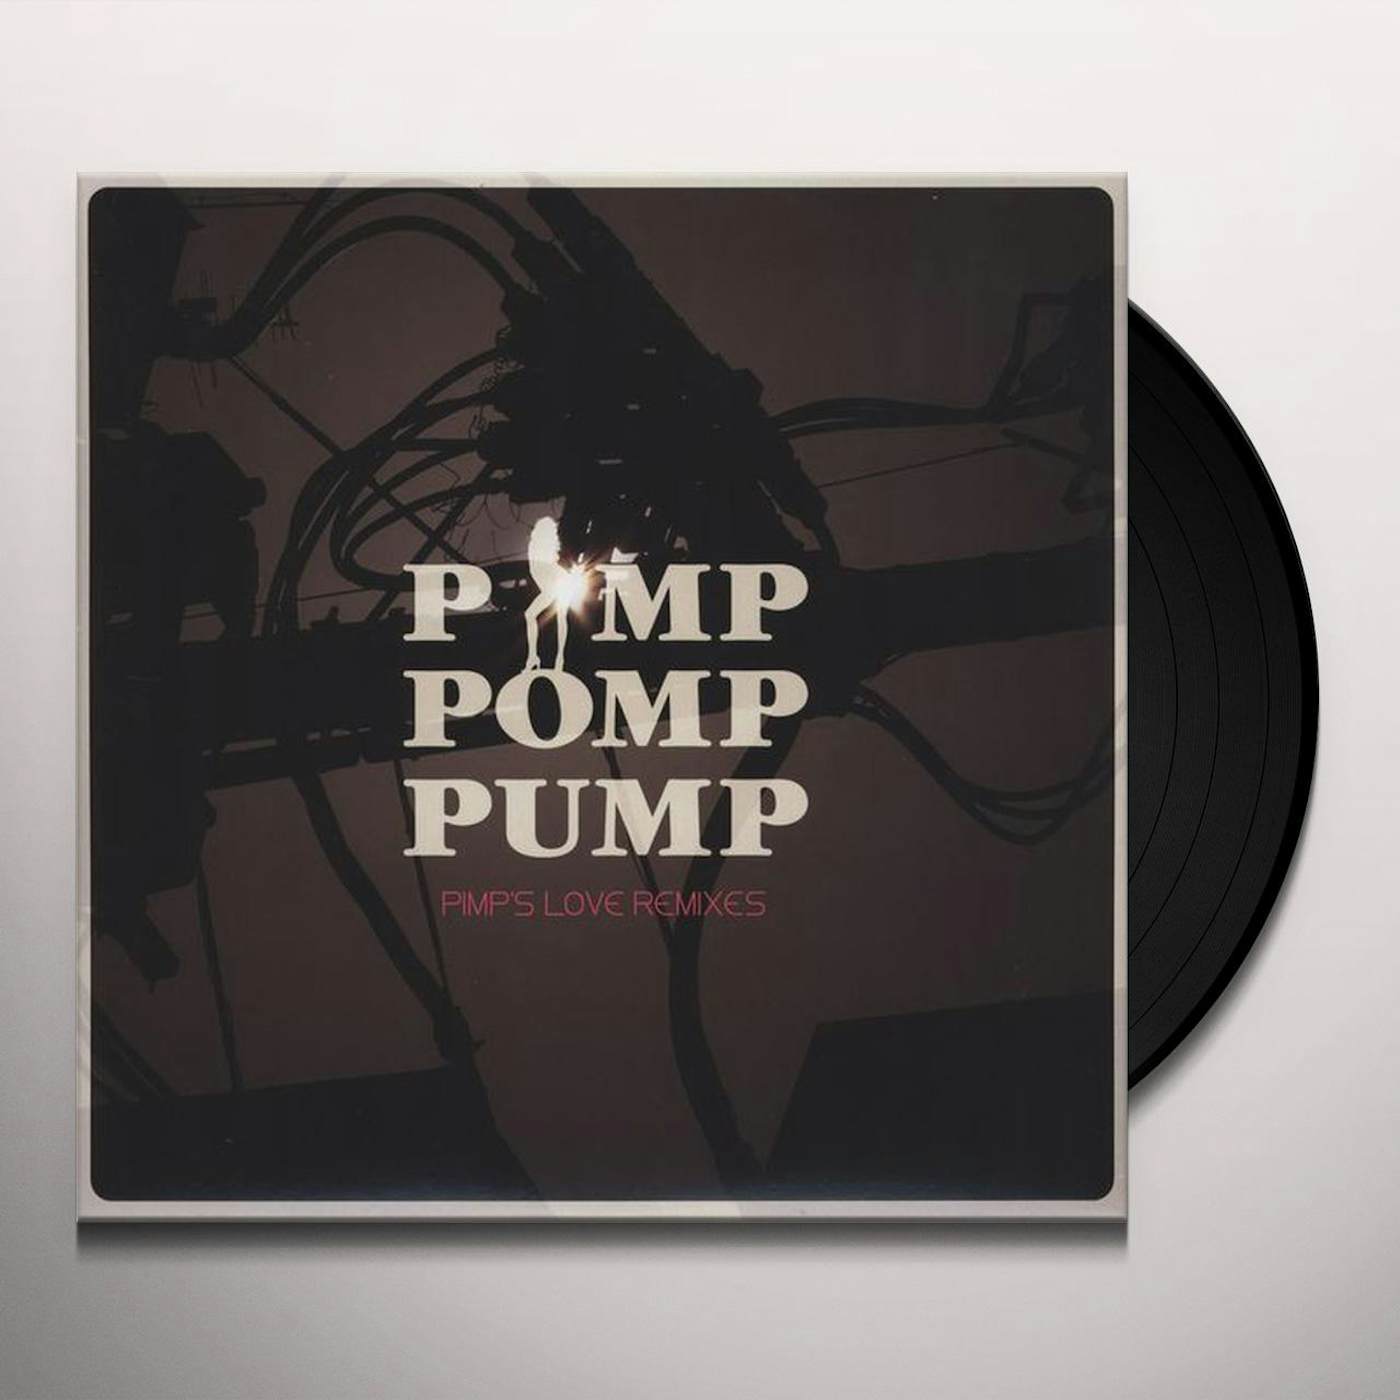 Pimp Pomp Pump PIMP'S LOVE REMIXES Vinyl Record